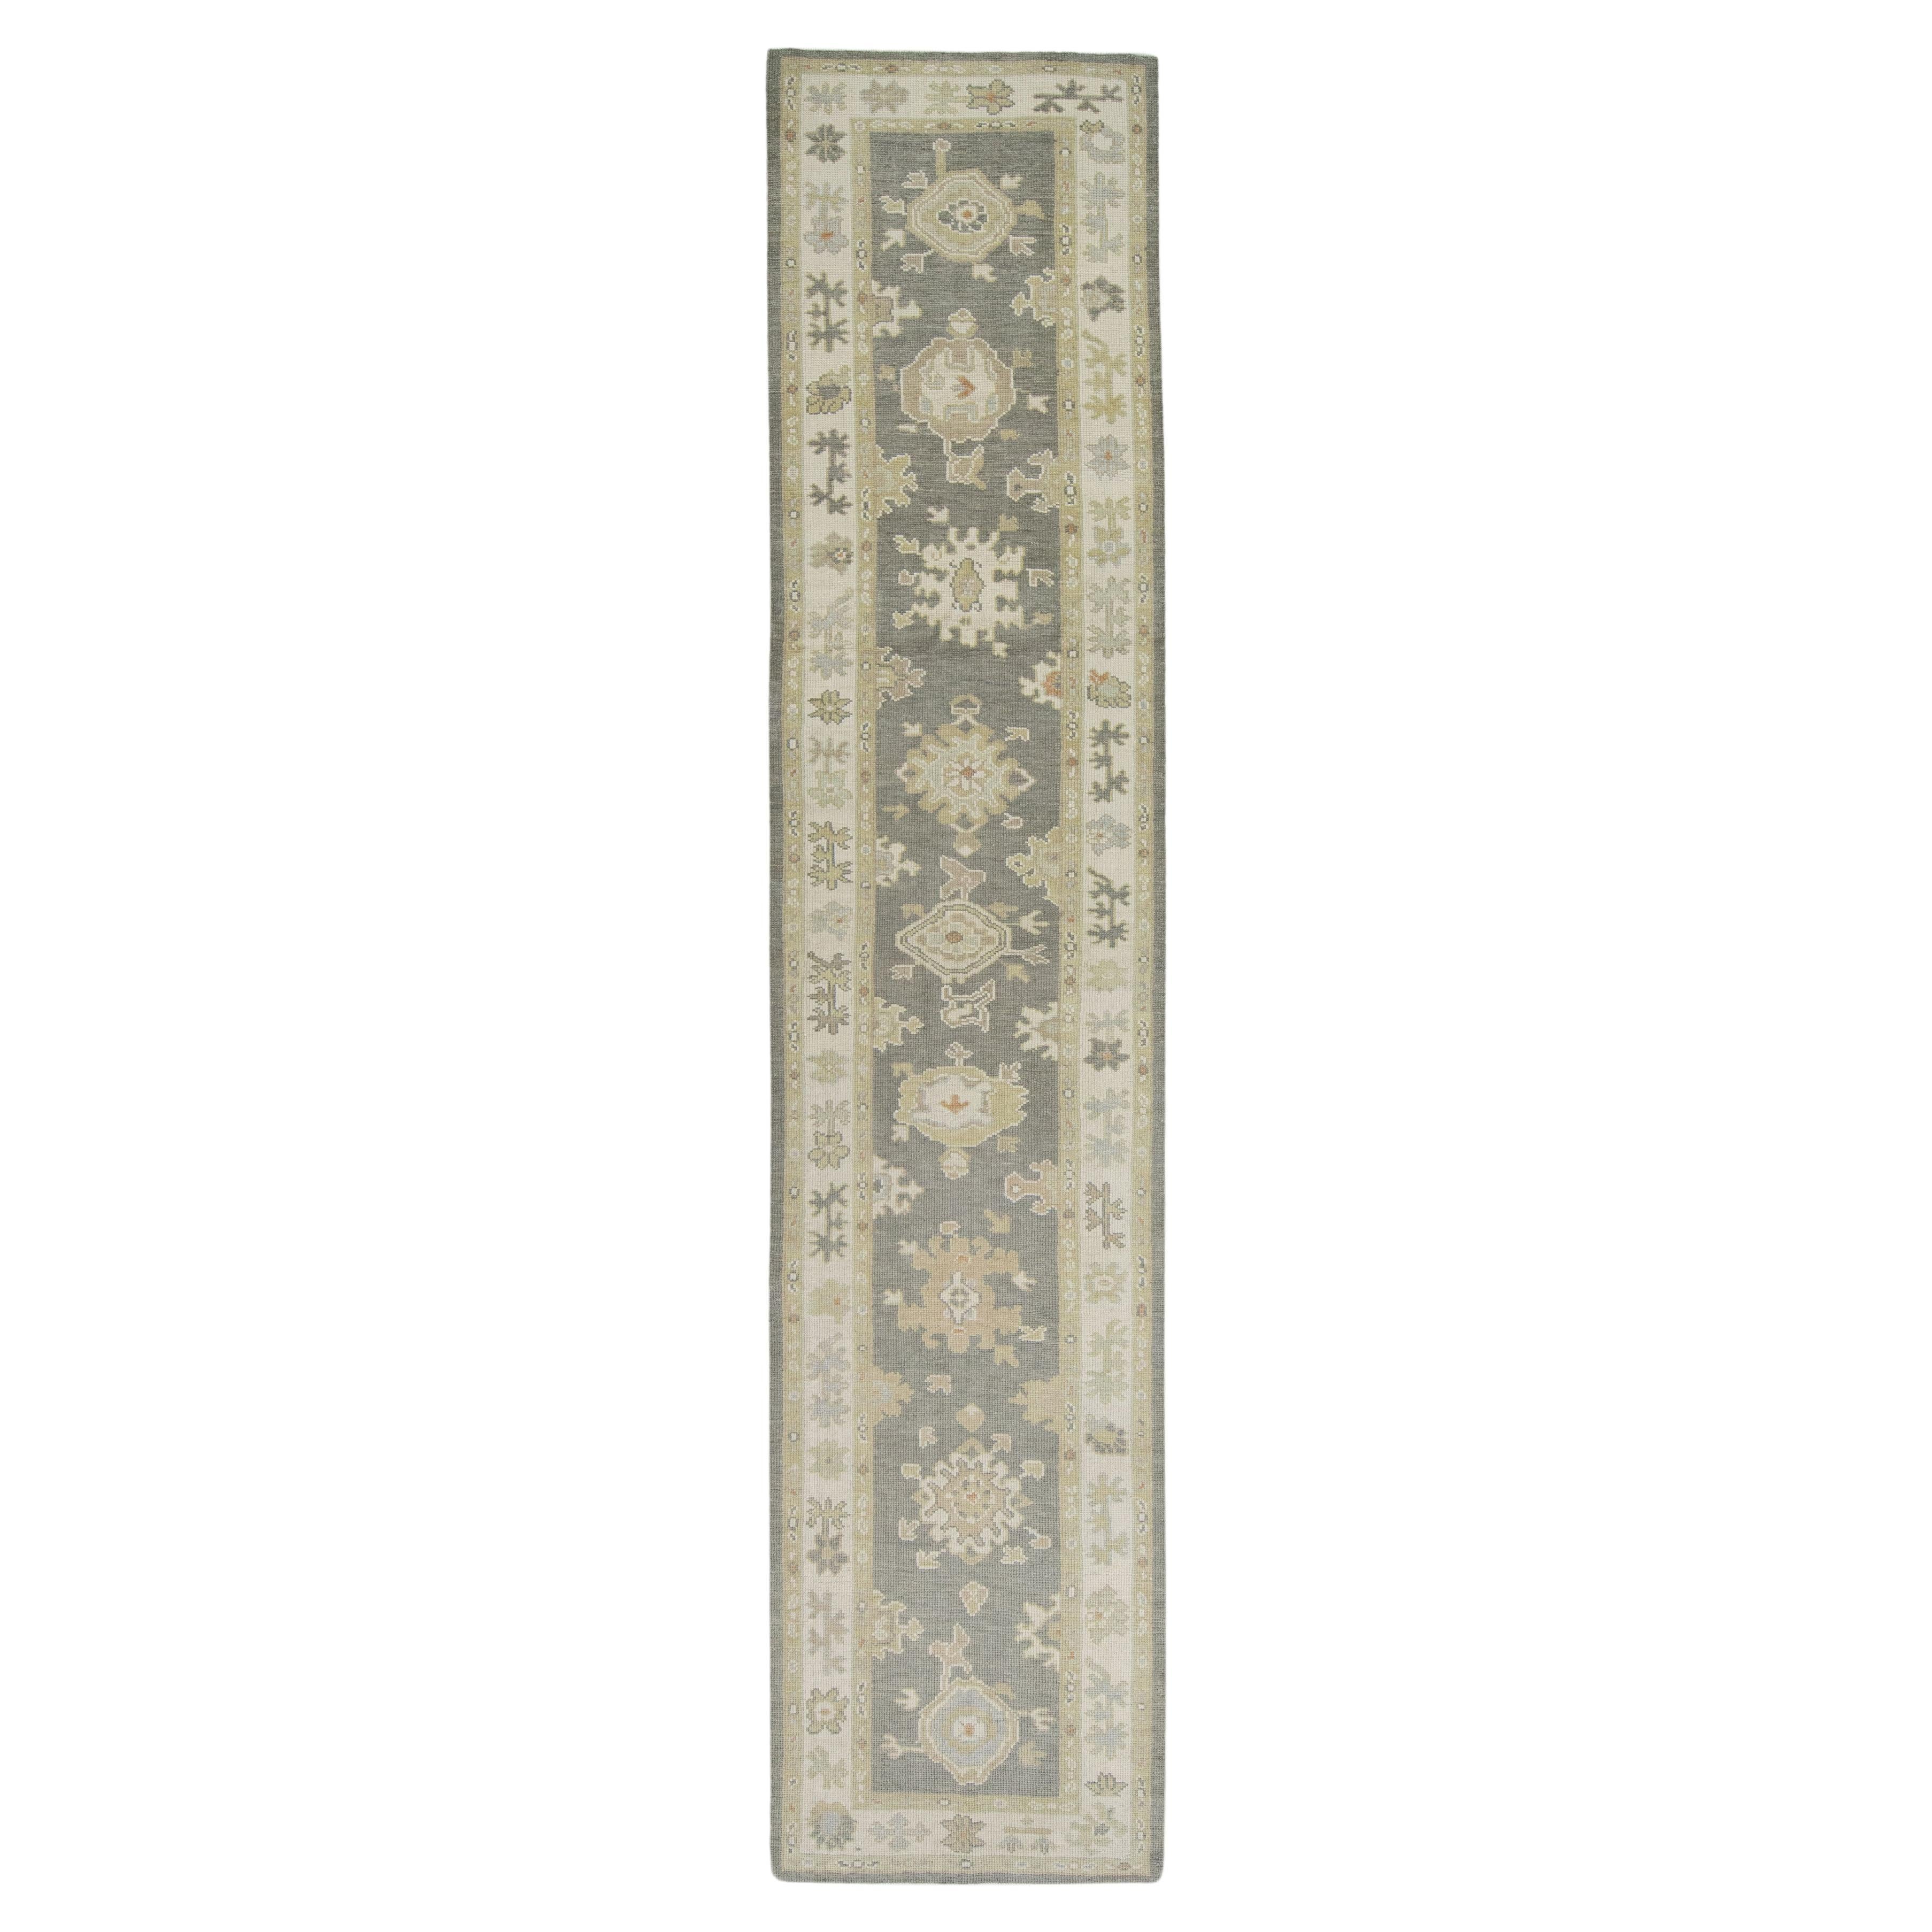 Handgewebter türkischer Oushak-Teppich aus Wolle 2'10"x 14'6"